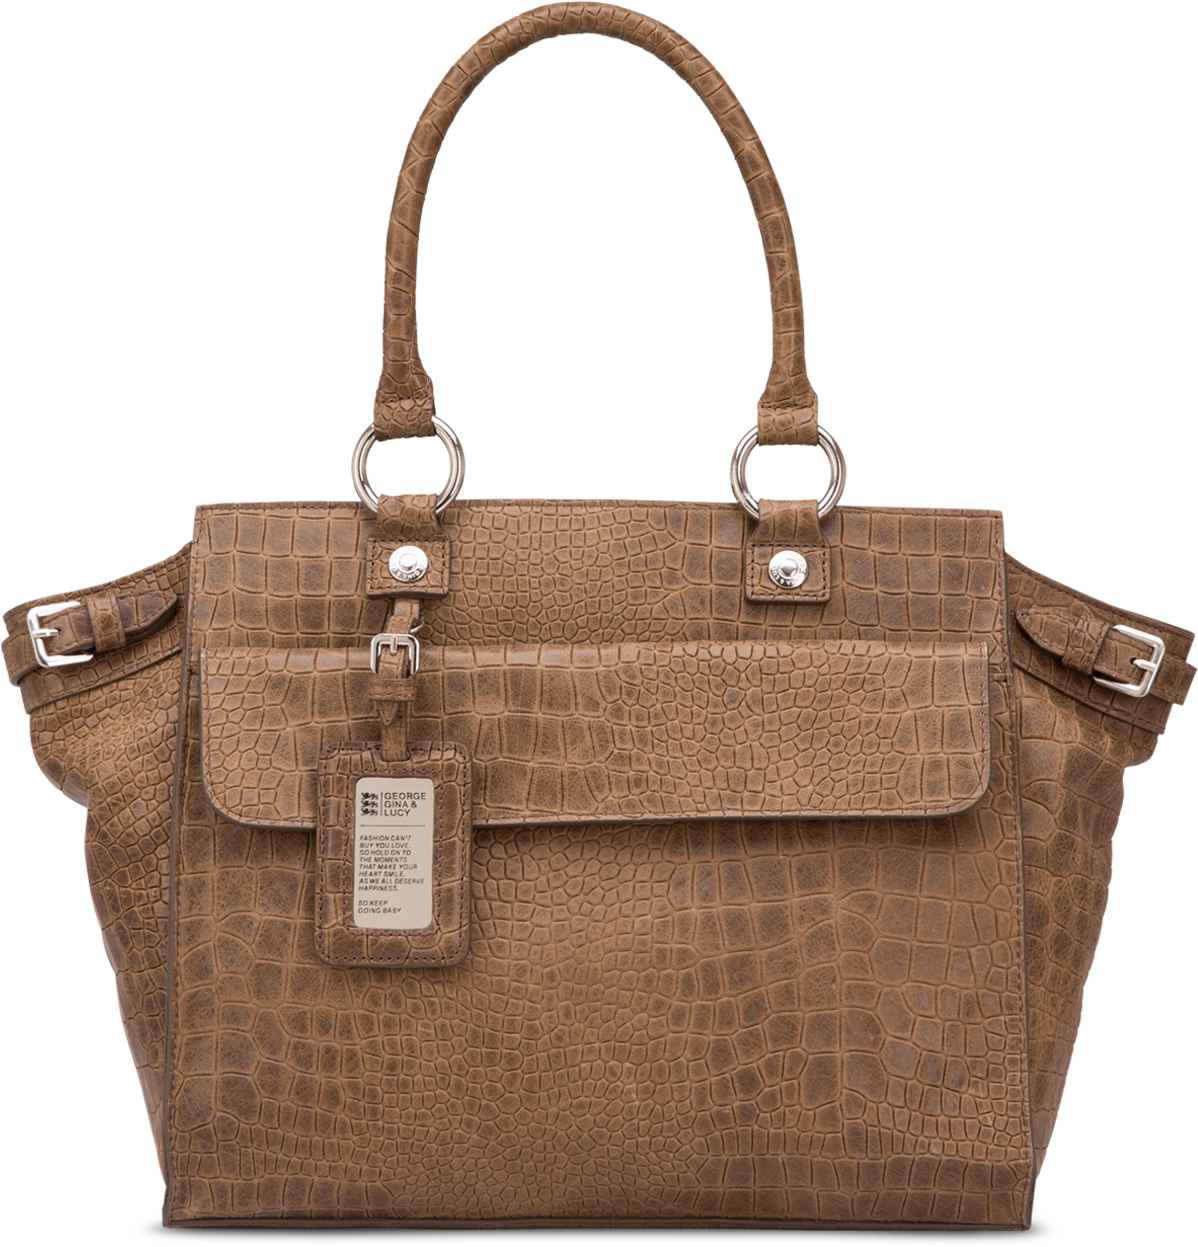 Leather Brown Handbag PNG Image High Quality PNG Image